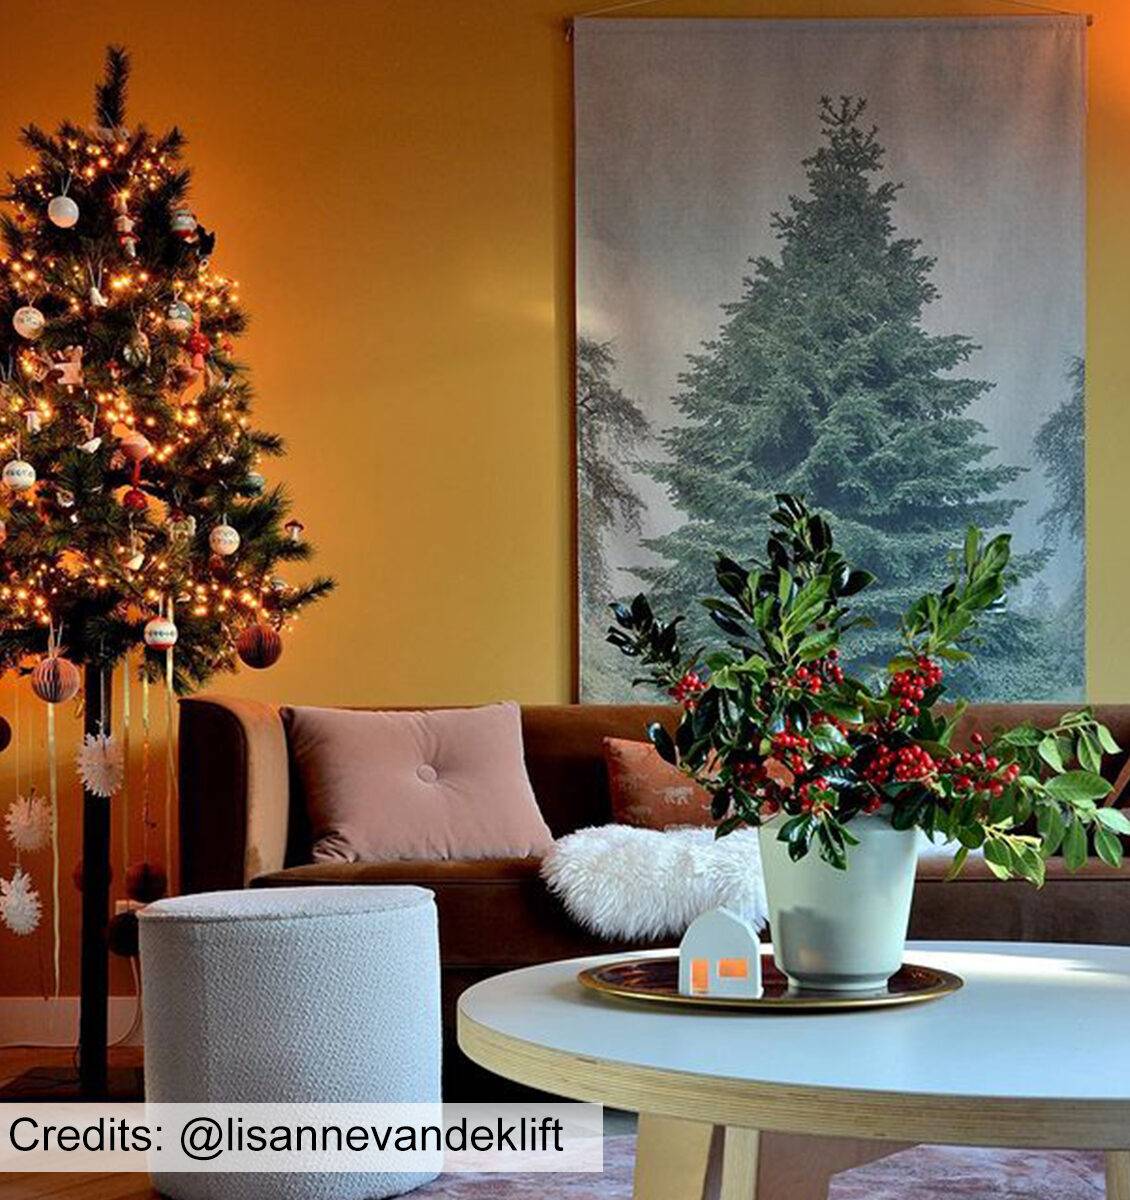 NL wandkleed met kerstboom aan muur boven bank in woonkamer